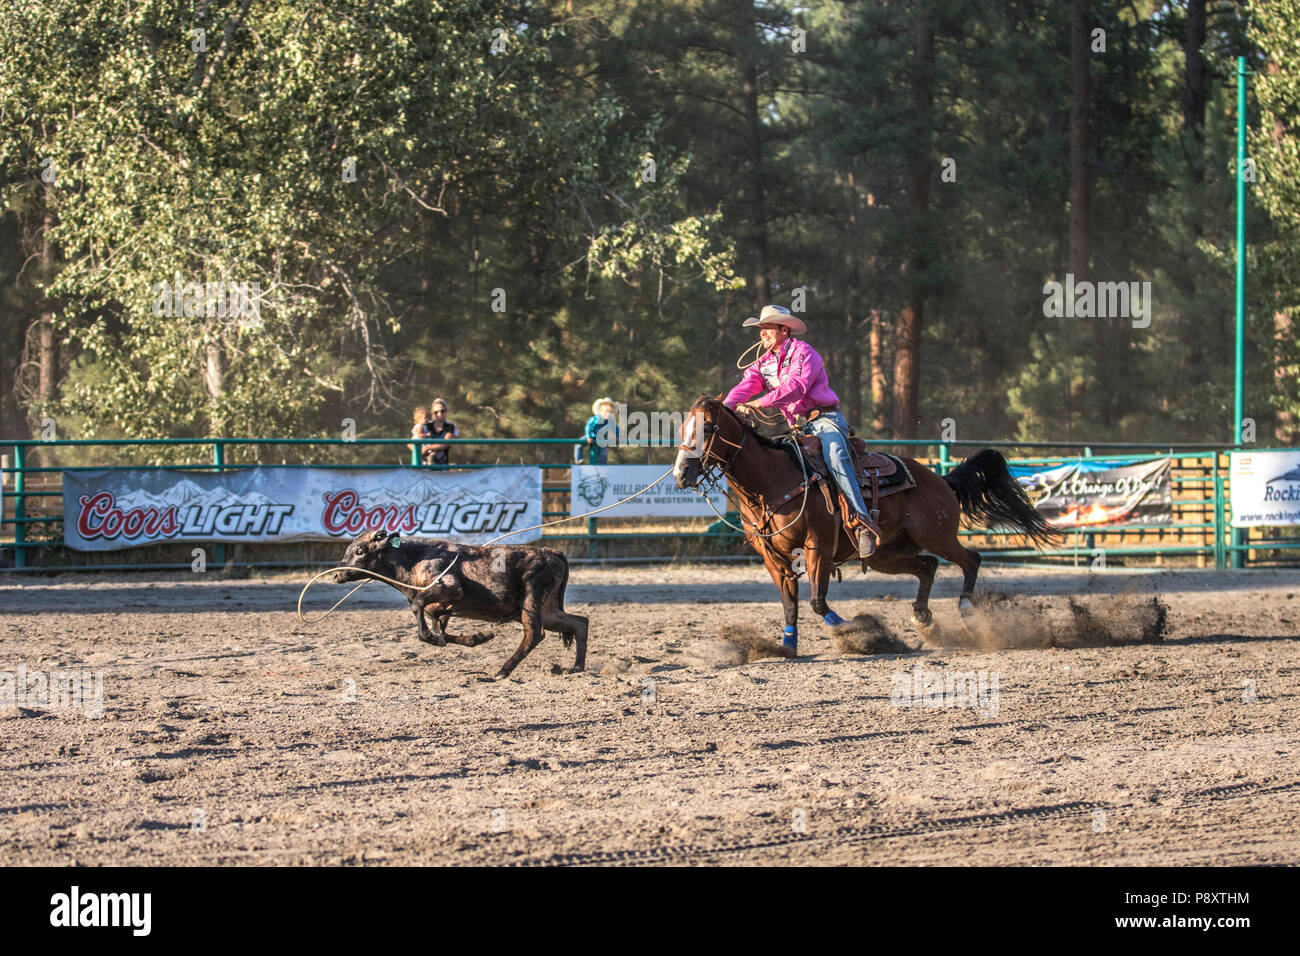 Attacher au lasso, rodéo. Man vs veau dans un événement. Passionnant, vitesse, comme le lasso cowboy calf en mouvement rapide. Cranbrook, BC, Canada. Tyson Durfey Banque D'Images